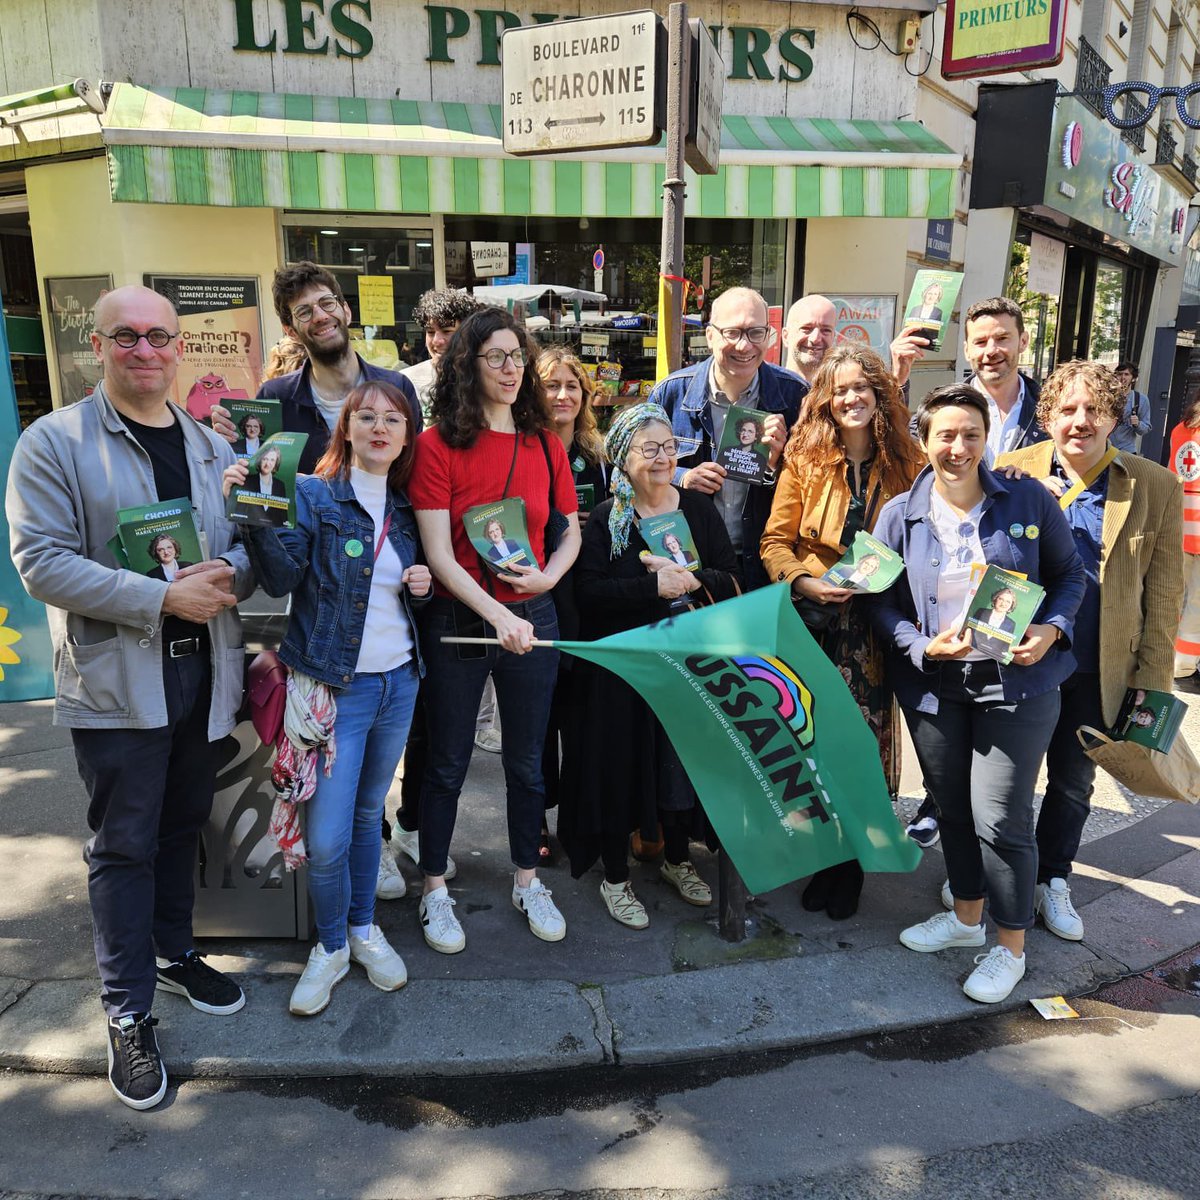 Ce matin au marché, mobilisé-es pour l’écologie aux élections #européennes avec @DavidCormand @floraghebali #ecologistes #MarieToussaint